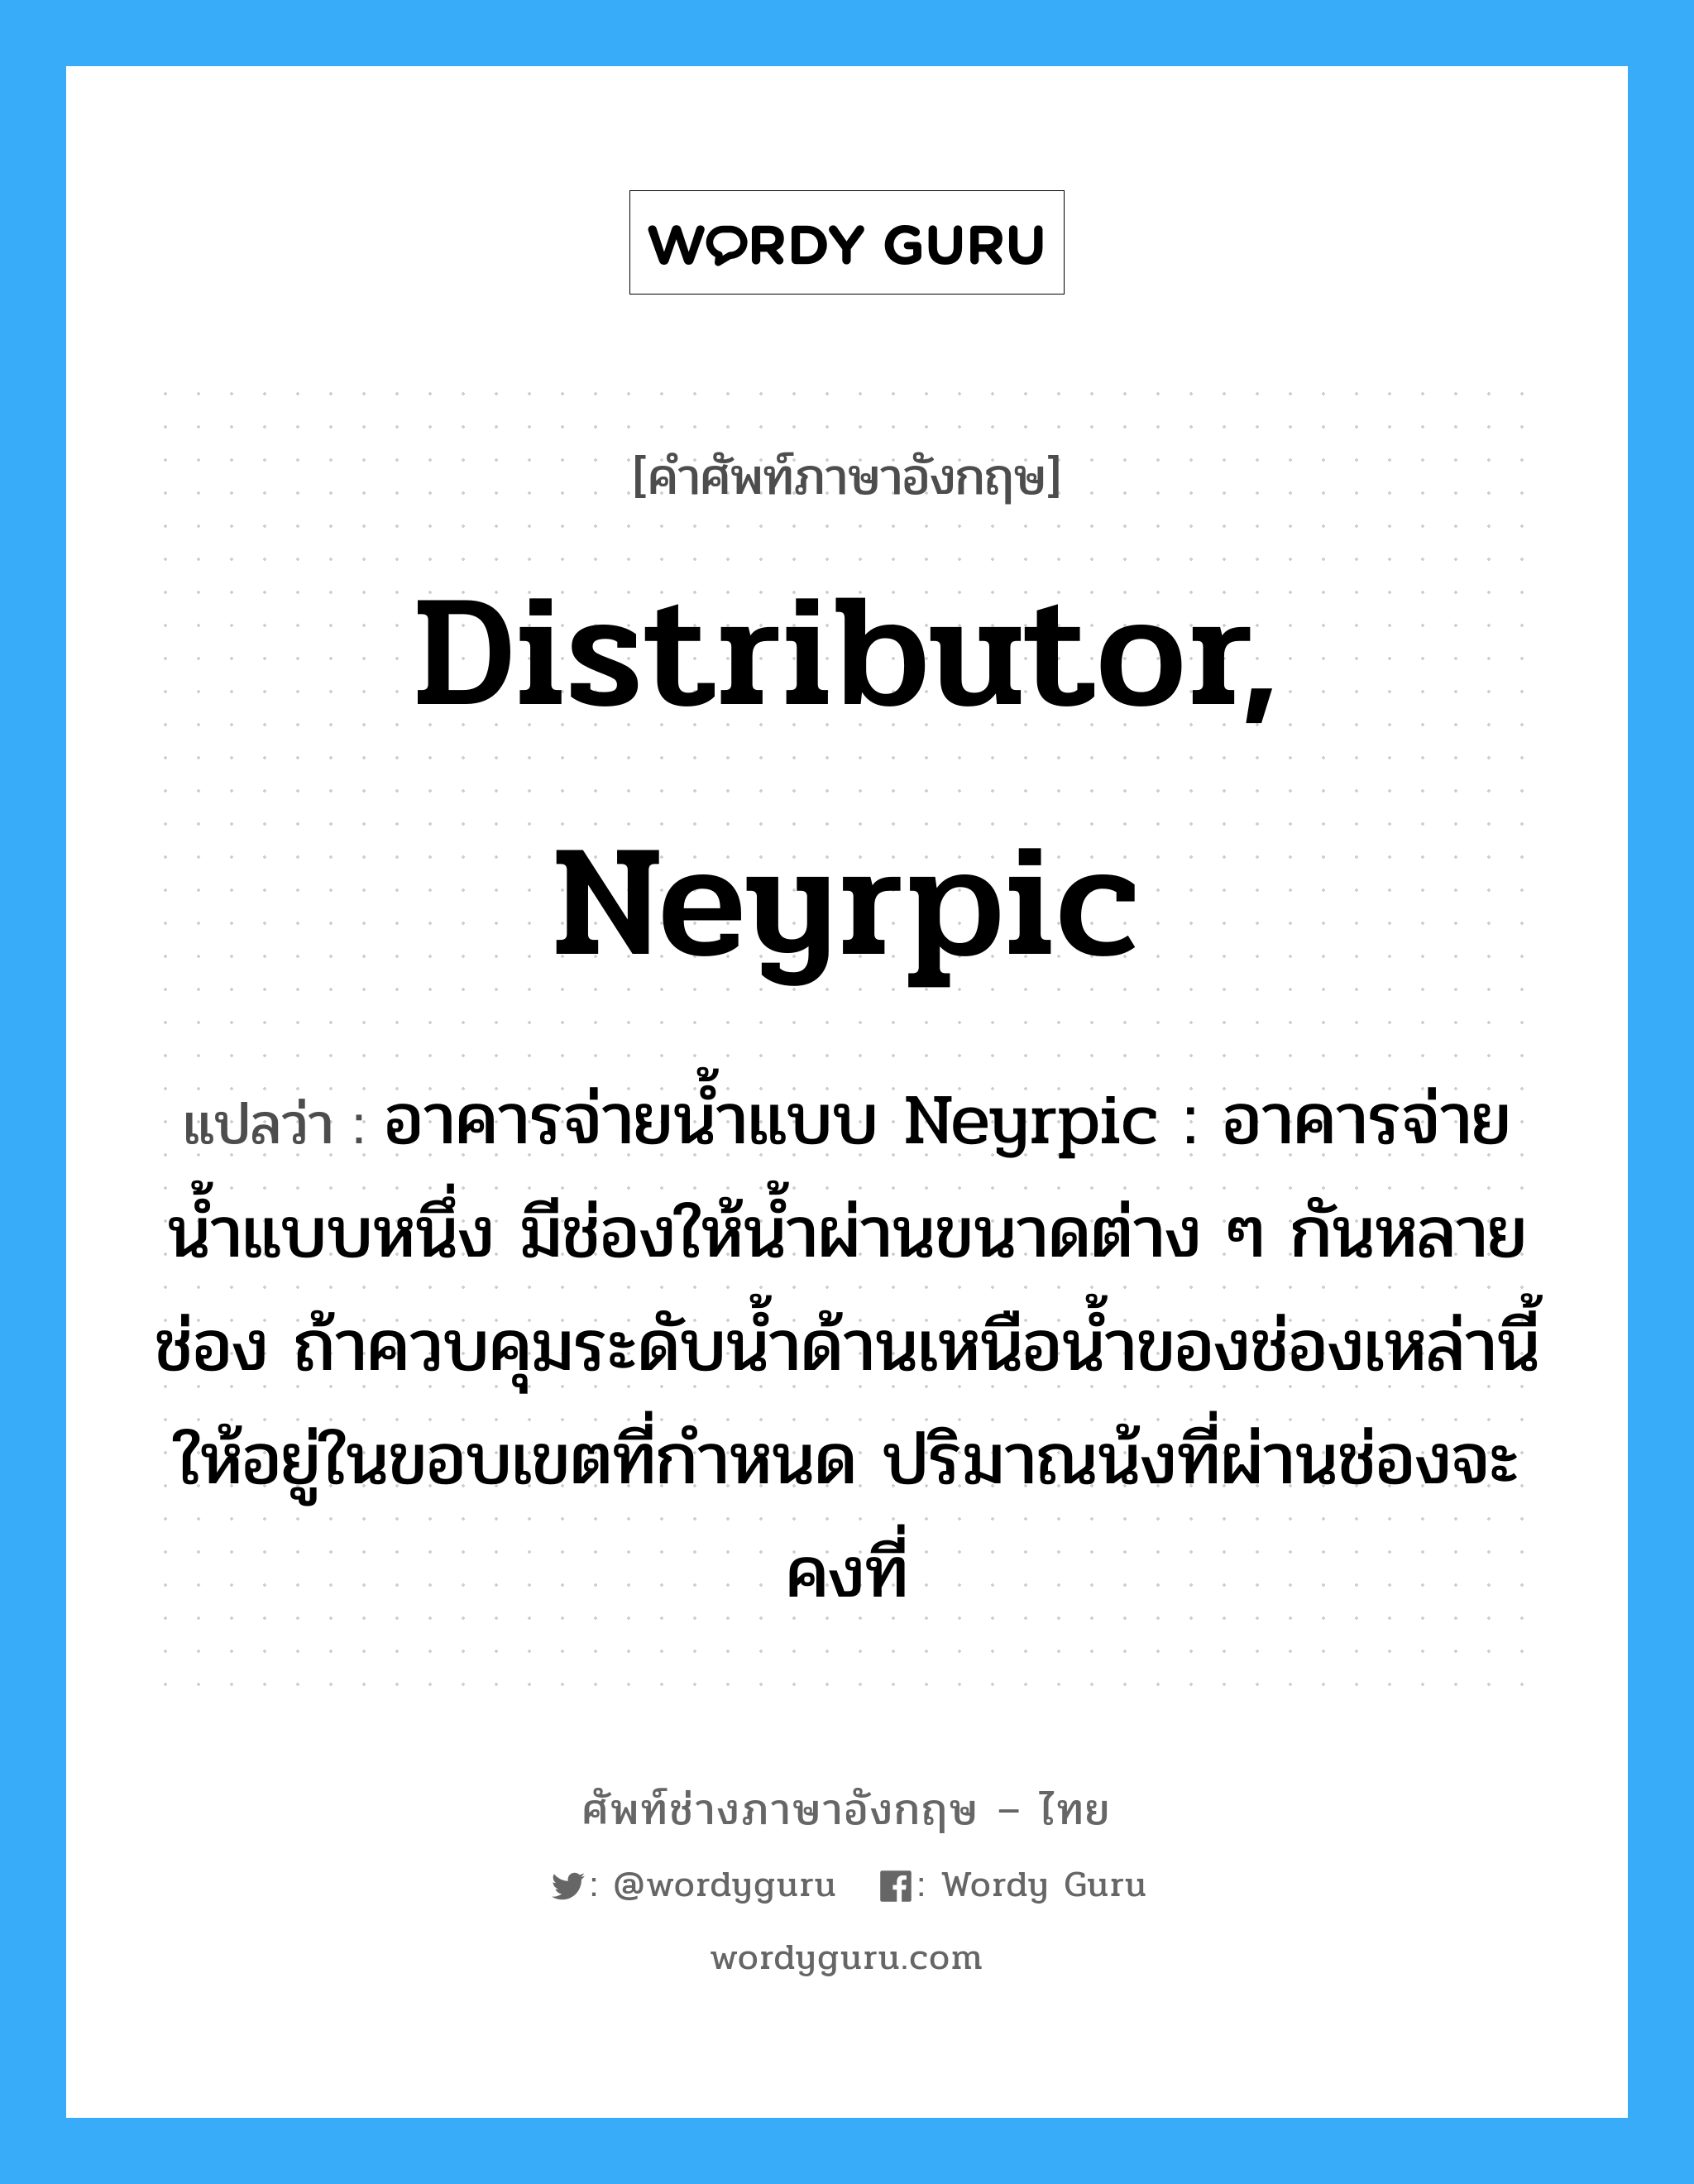 distributor, Neyrpic แปลว่า?, คำศัพท์ช่างภาษาอังกฤษ - ไทย distributor, Neyrpic คำศัพท์ภาษาอังกฤษ distributor, Neyrpic แปลว่า อาคารจ่ายน้ำแบบ Neyrpic : อาคารจ่ายน้ำแบบหนึ่ง มีช่องให้น้ำผ่านขนาดต่าง ๆ กันหลายช่อง ถ้าควบคุมระดับน้ำด้านเหนือน้ำของช่องเหล่านี้ให้อยู่ในขอบเขตที่กำหนด ปริมาณน้งที่ผ่านช่องจะคงที่